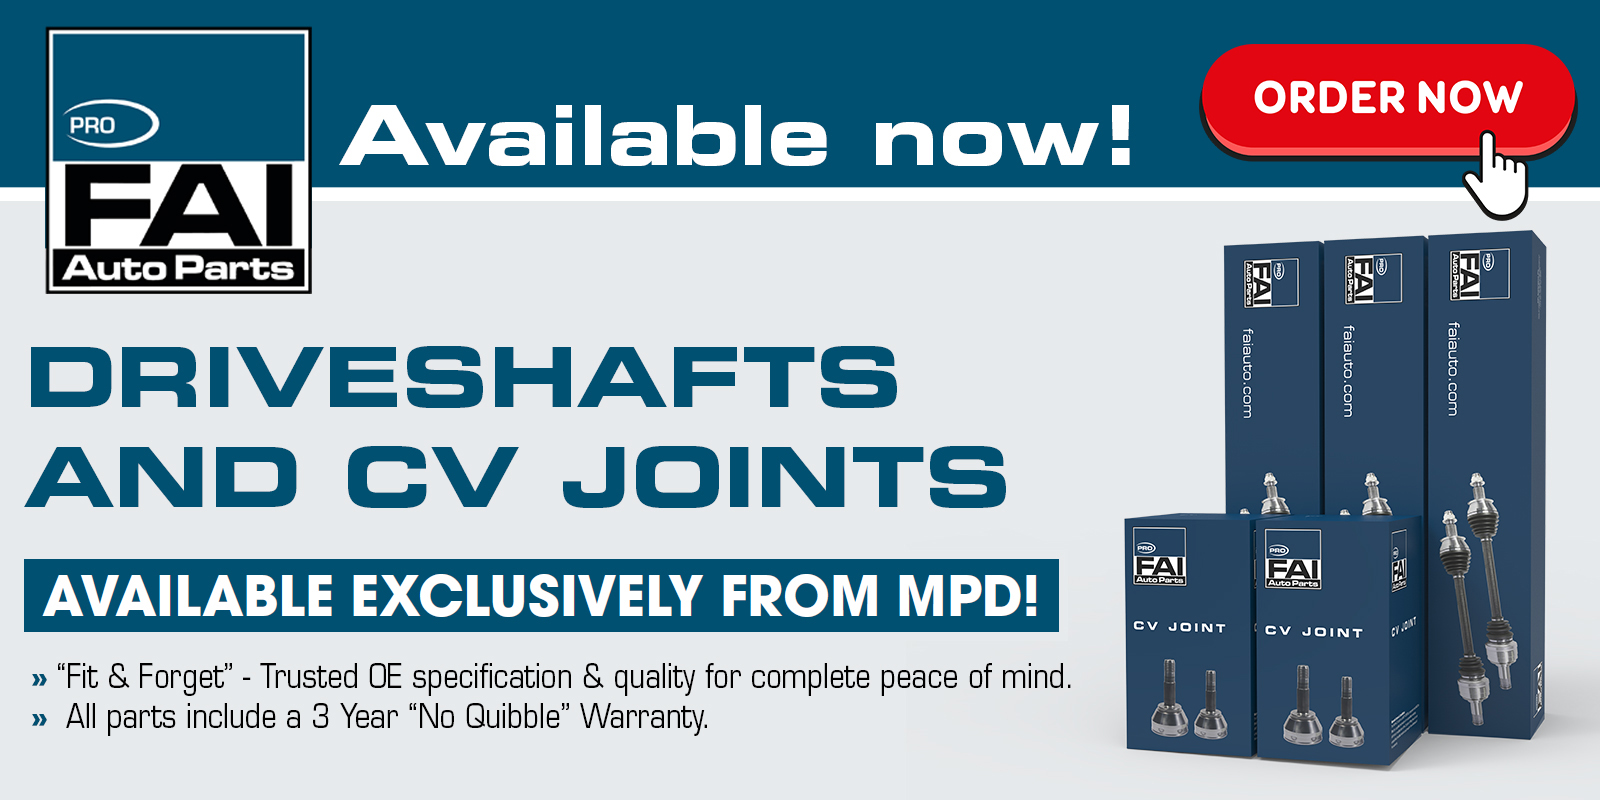 FAI Pro - MPD Exclusive - Driveshafts & CV Joints